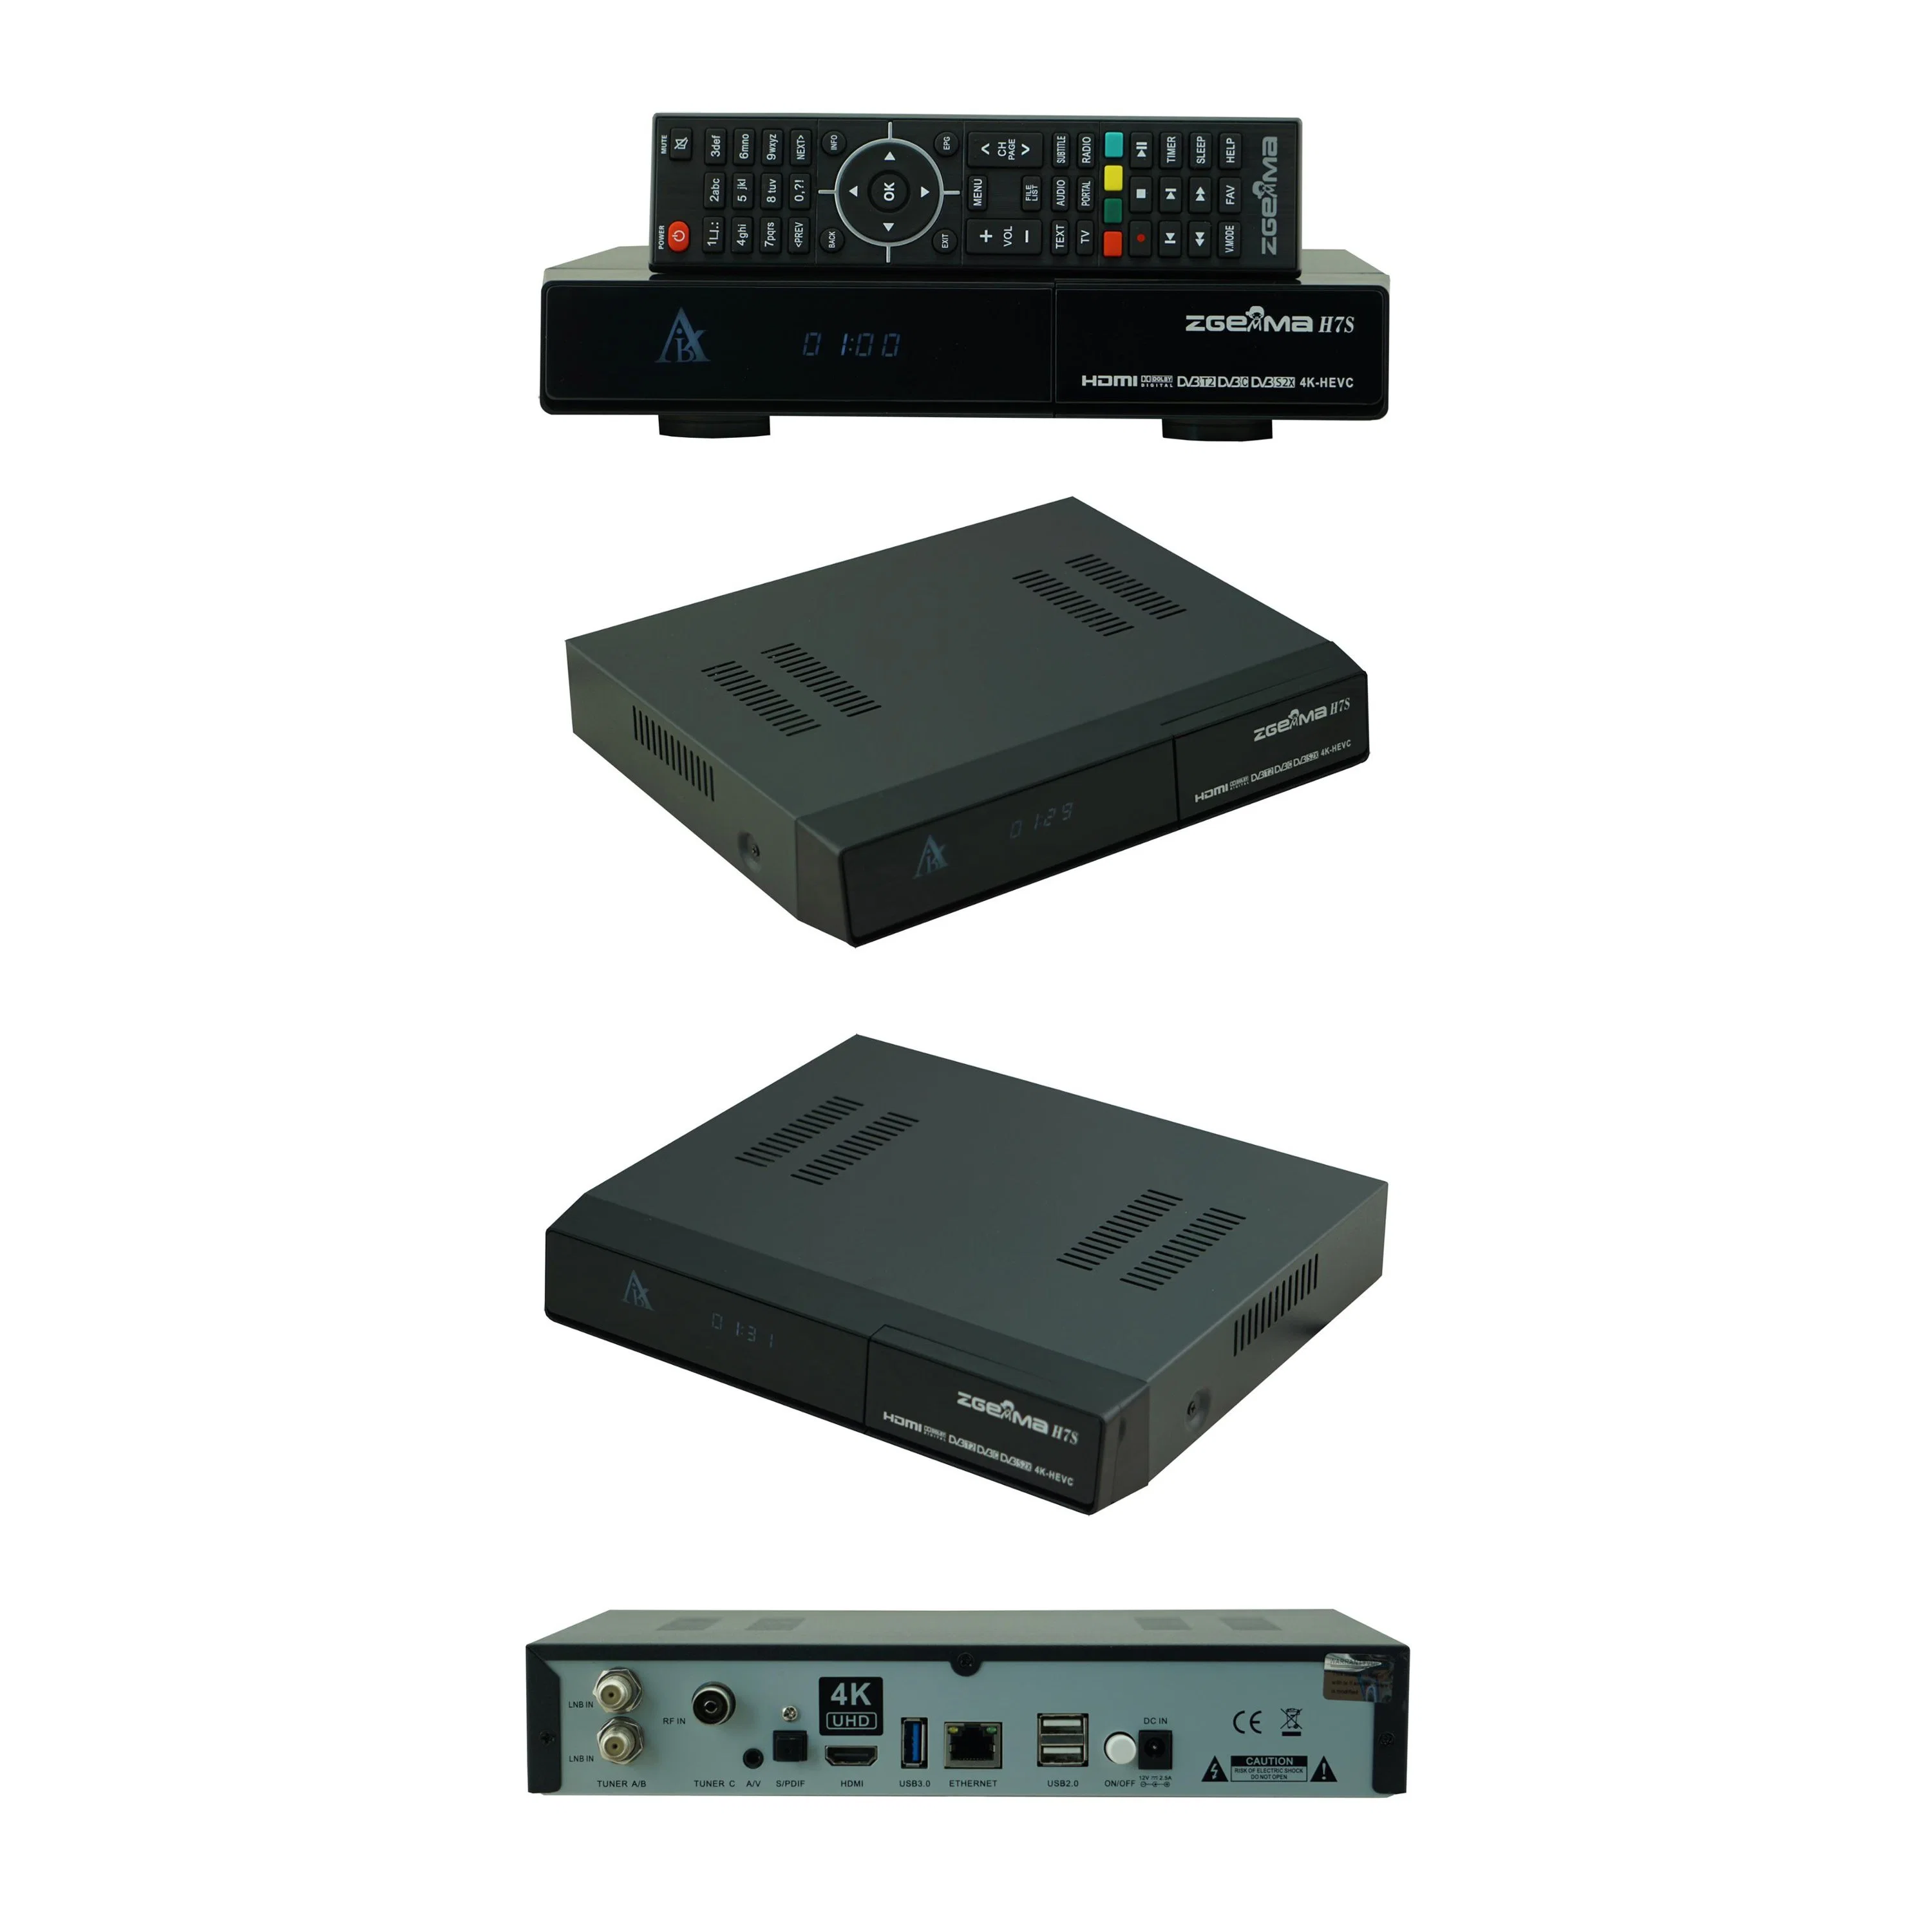 Améliorez votre divertissement TV avec Zgemma H7S - Flash eMMC 16 Go, récepteur TV satellite DDR3 1 Go